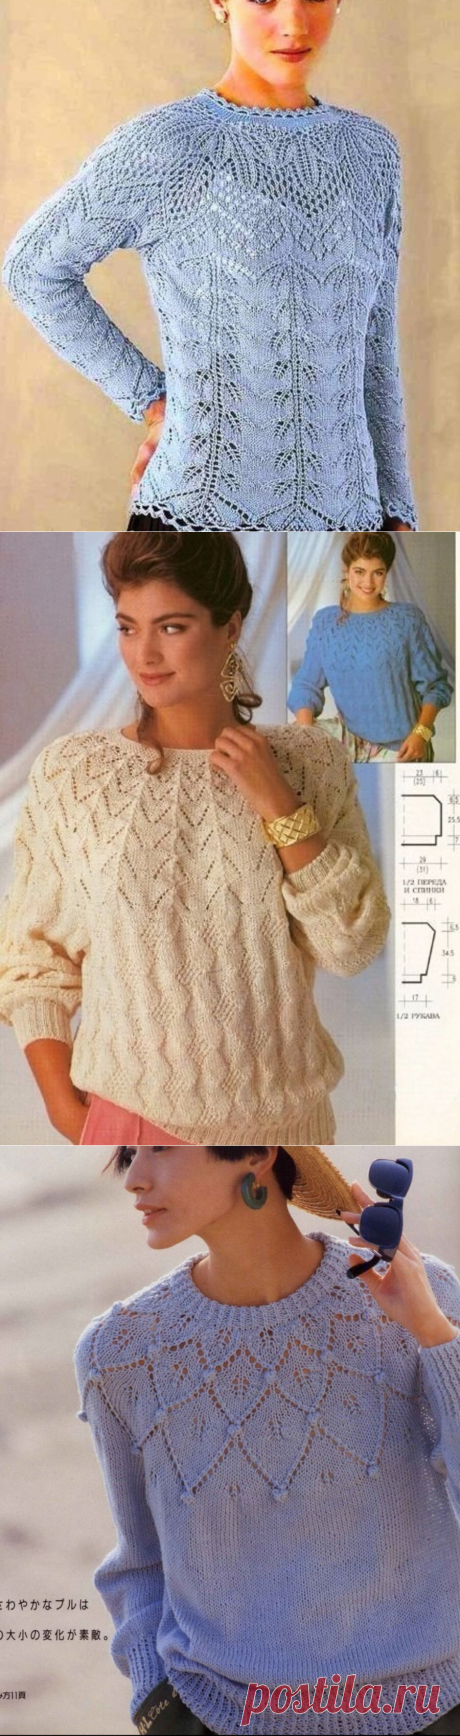 Любимые пуловеры с круглой кокеткой спицами 🌺 | Asha. Вязание и дизайн.🌶Сонник. | Яндекс Дзен